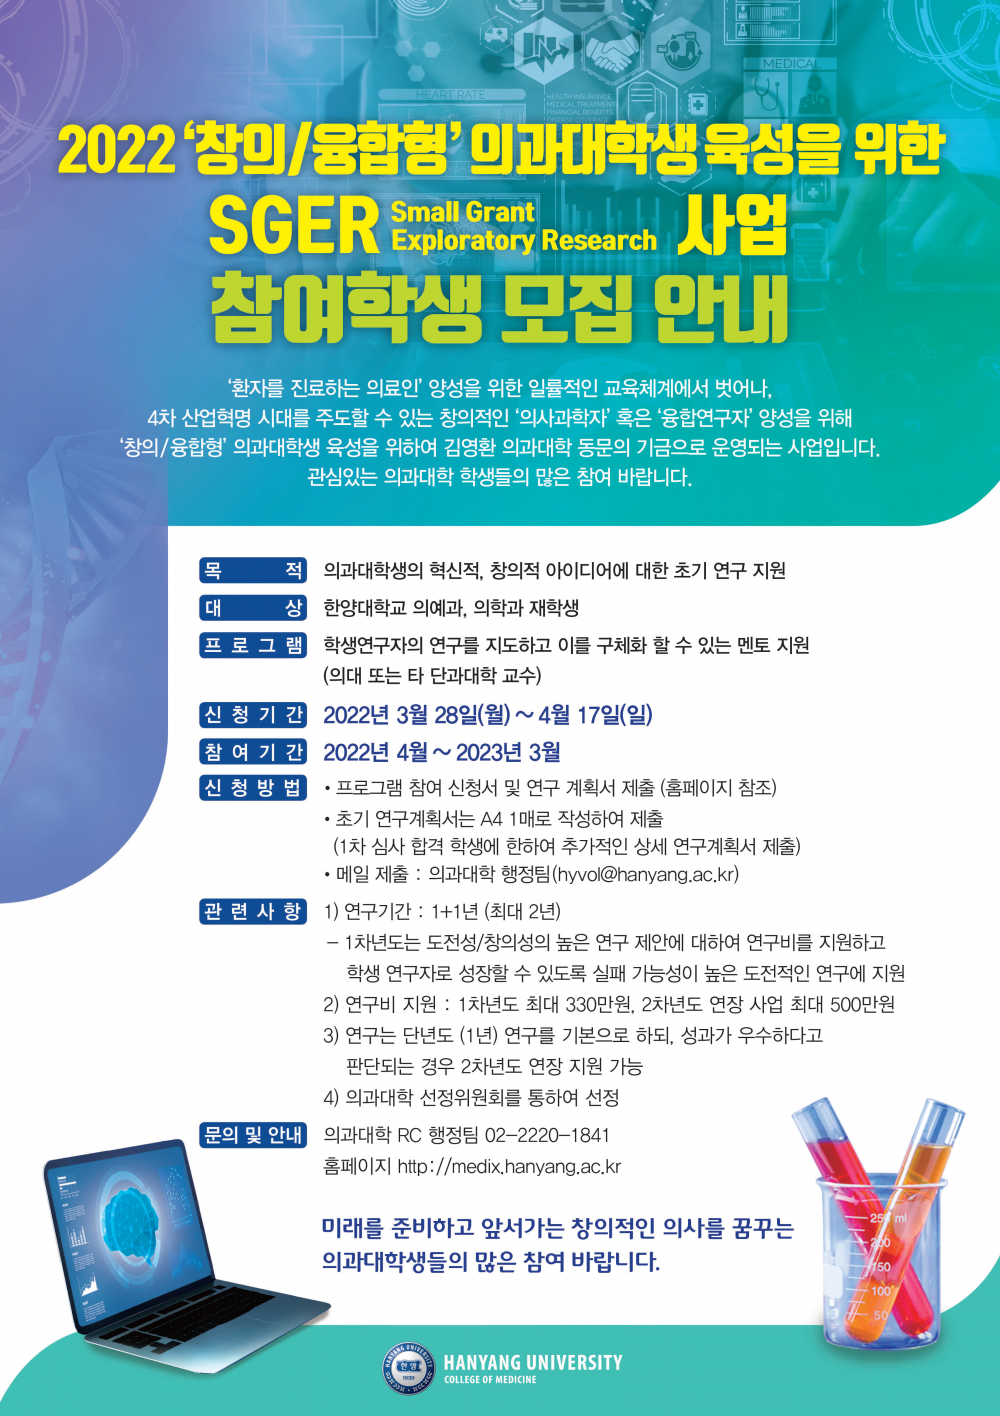 의과대학 SGER 사업 포스터